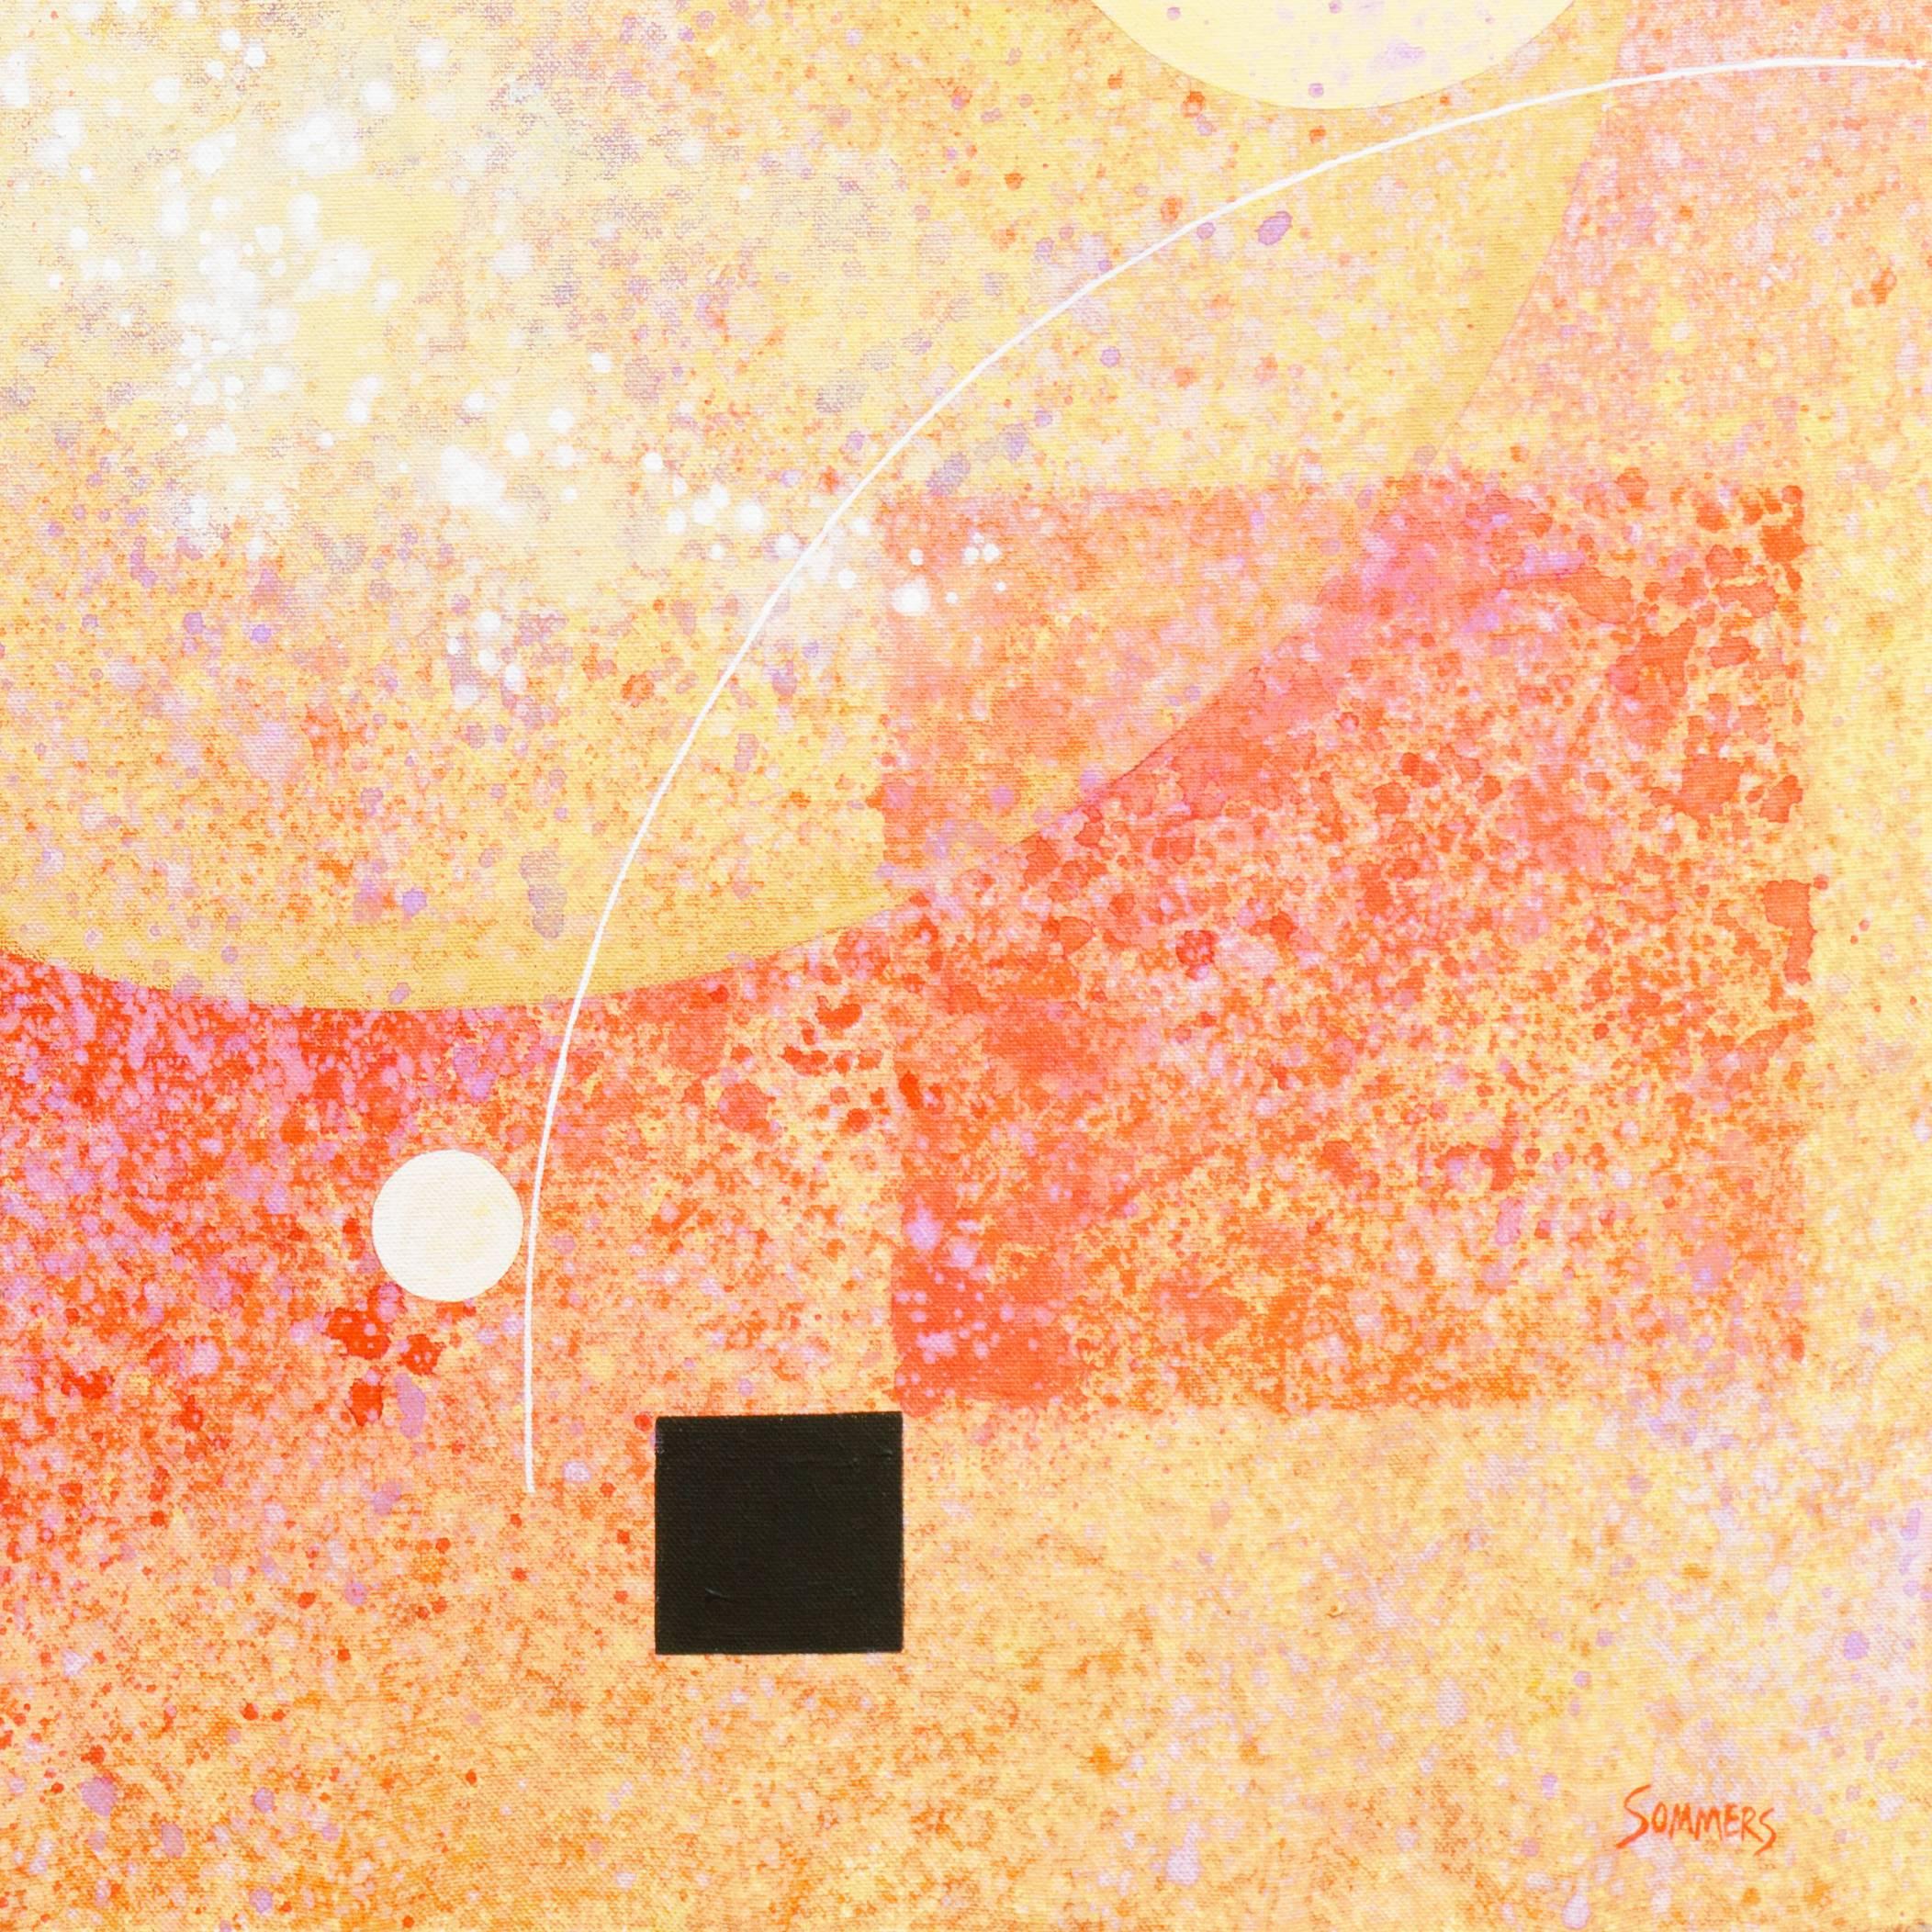 Ein substanzielles abstraktes Ölgemälde mit sich überlappenden Quadraten und Kreisen in gespachtelten Karmin-, Ocker-, Creme-, Elfenbein- und Schwarztönen, akzentuiert durch geschwungene lineare Elemente.

Wird John Franklin Sommers zugeschrieben.